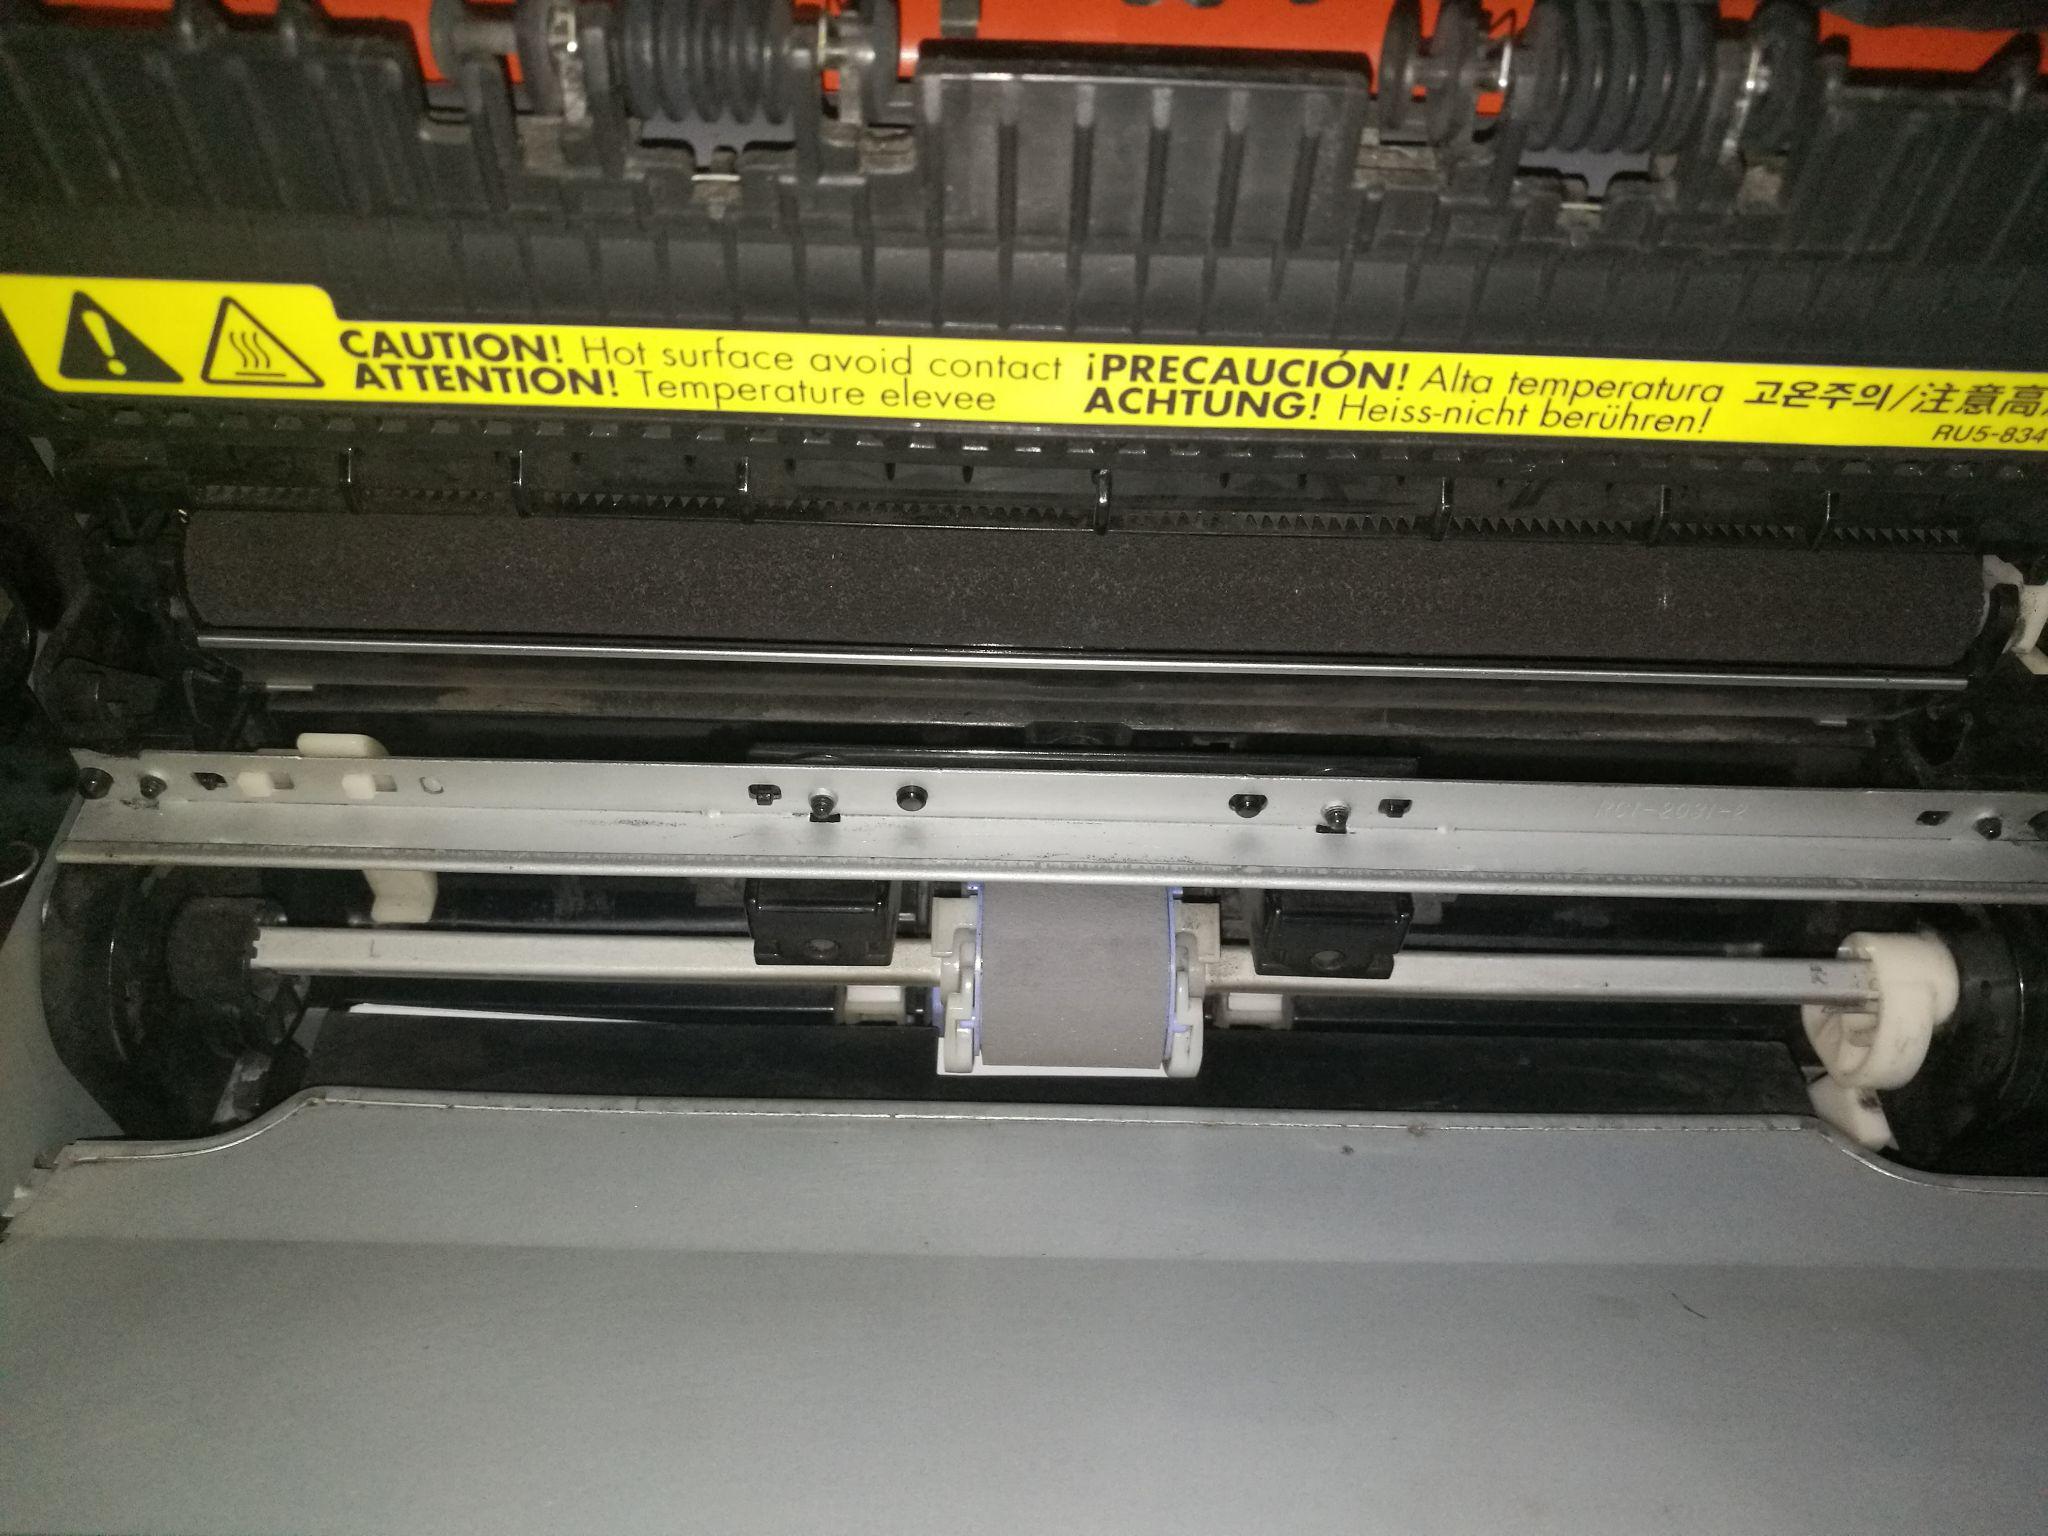 打印机惠普1020打印机卡纸了从进纸的地方把纸抽了出来没有碎纸但是不